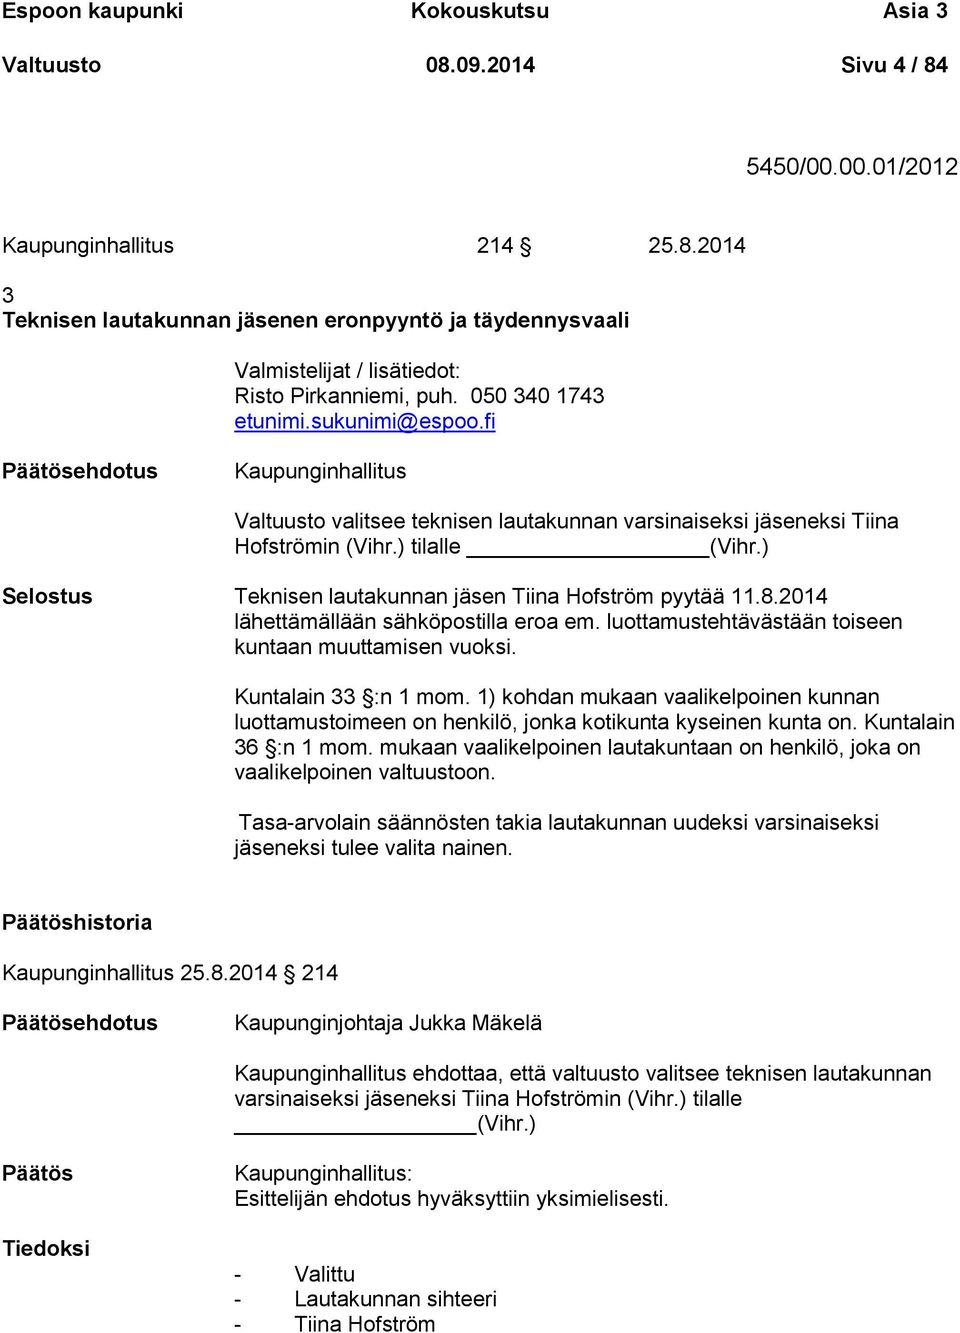 ) Selostus Teknisen lautakunnan jäsen Tiina Hofström pyytää 11.8.2014 lähettämällään sähköpostilla eroa em. luottamustehtävästään toiseen kuntaan muuttamisen vuoksi. Kuntalain 33 :n 1 mom.